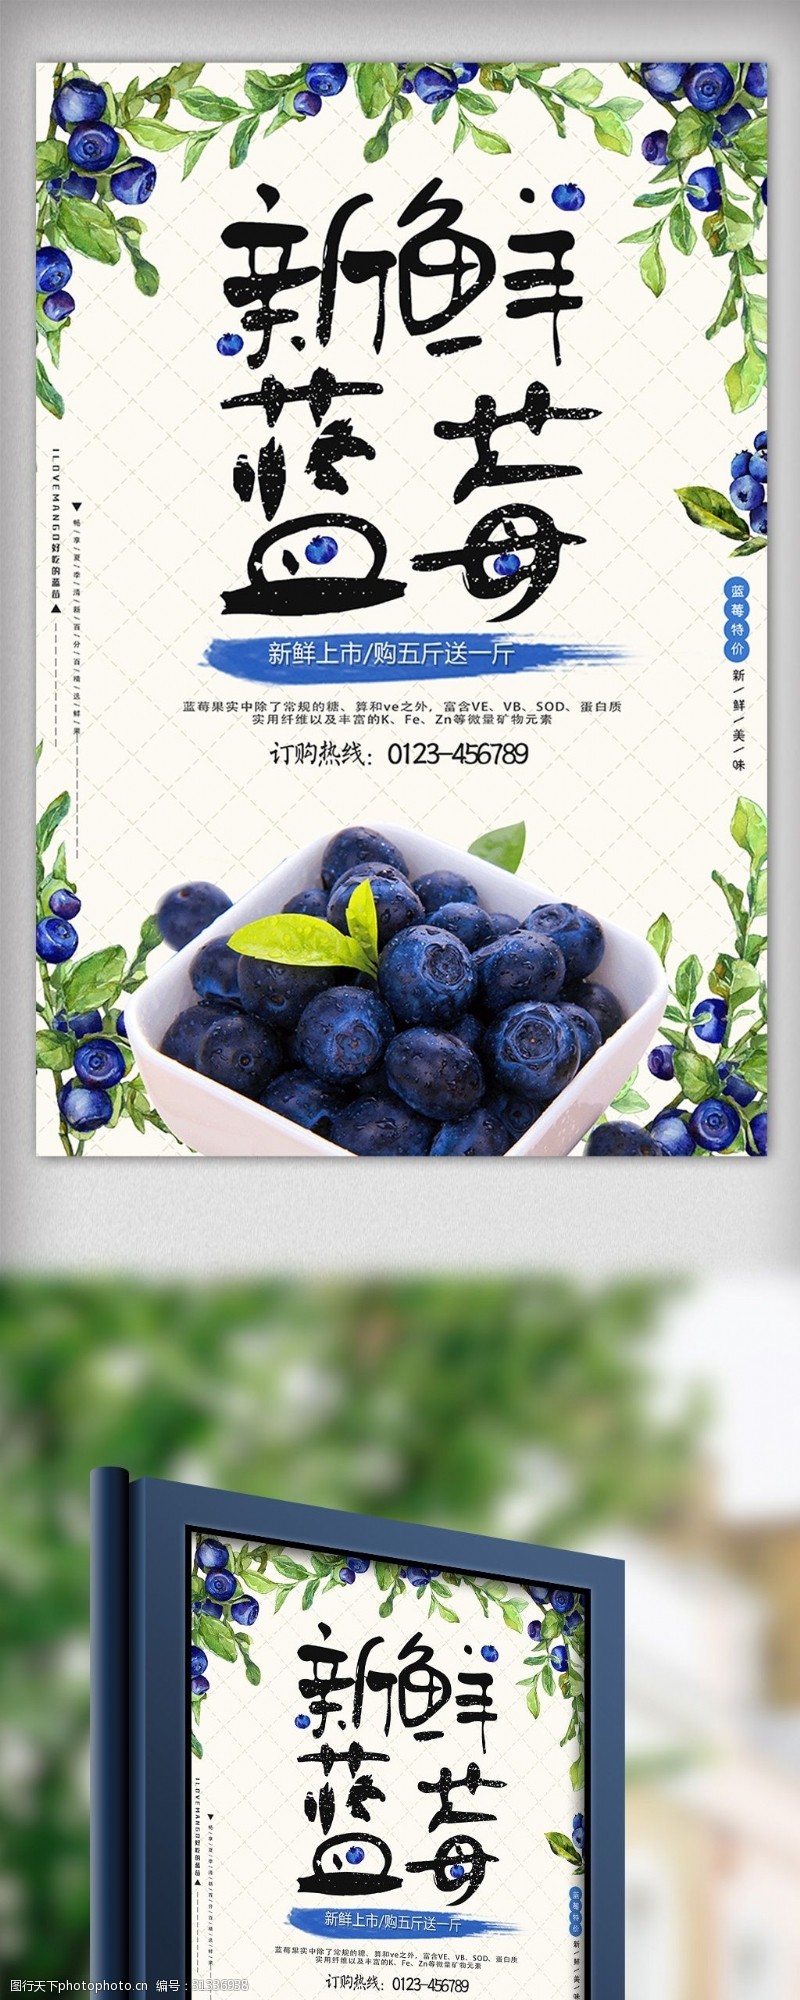 海鲜图片免费下载夏天新鲜蓝莓水果美食海报